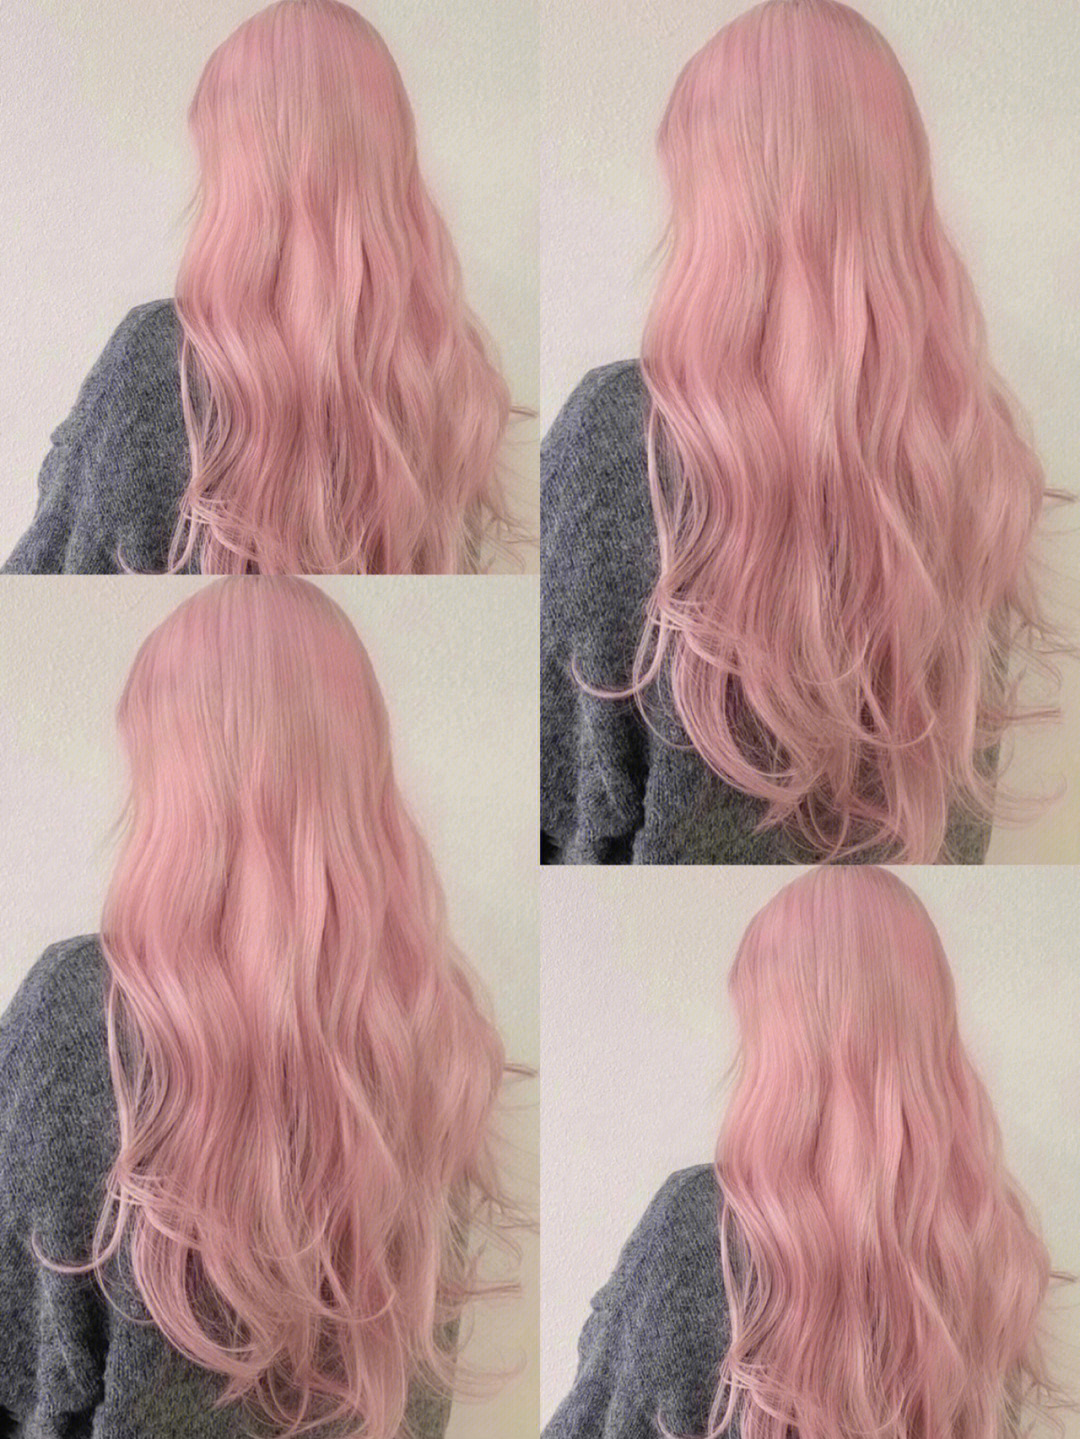 仙气十足超级可爱贈显白发色 仙女发色粉色头发还是忍不住漂了头发给